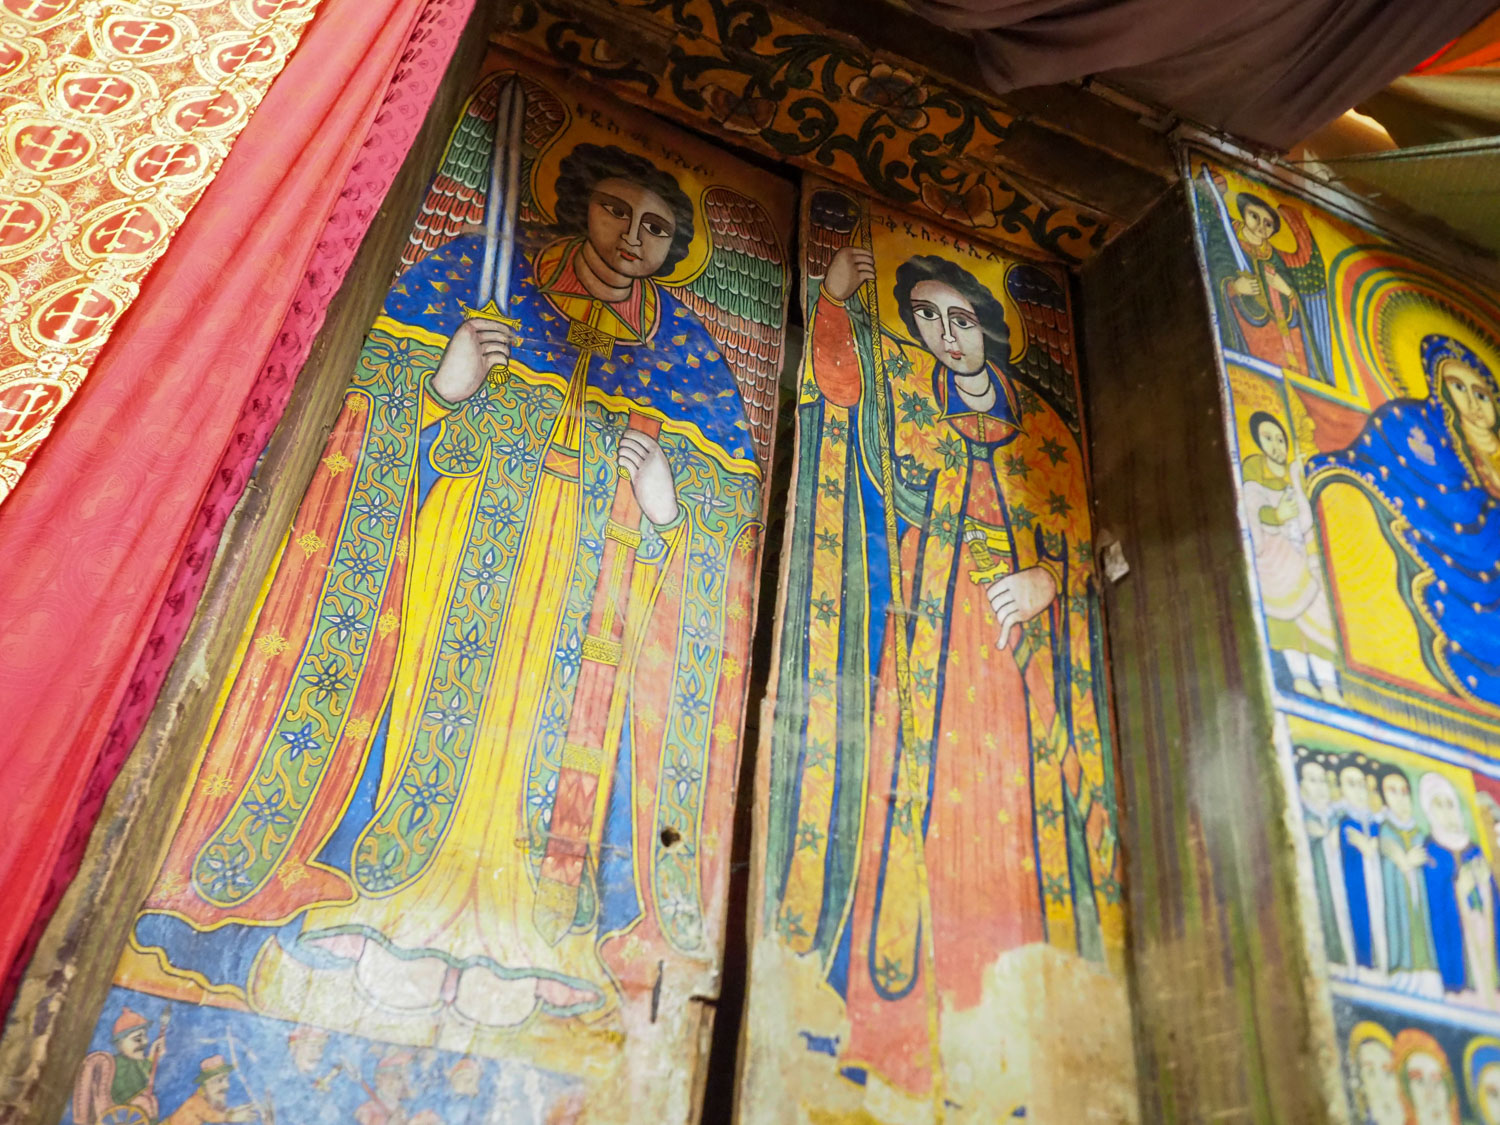 岩窟教会内の壁画も見事です。聖ミカエルと聖ガブリエル